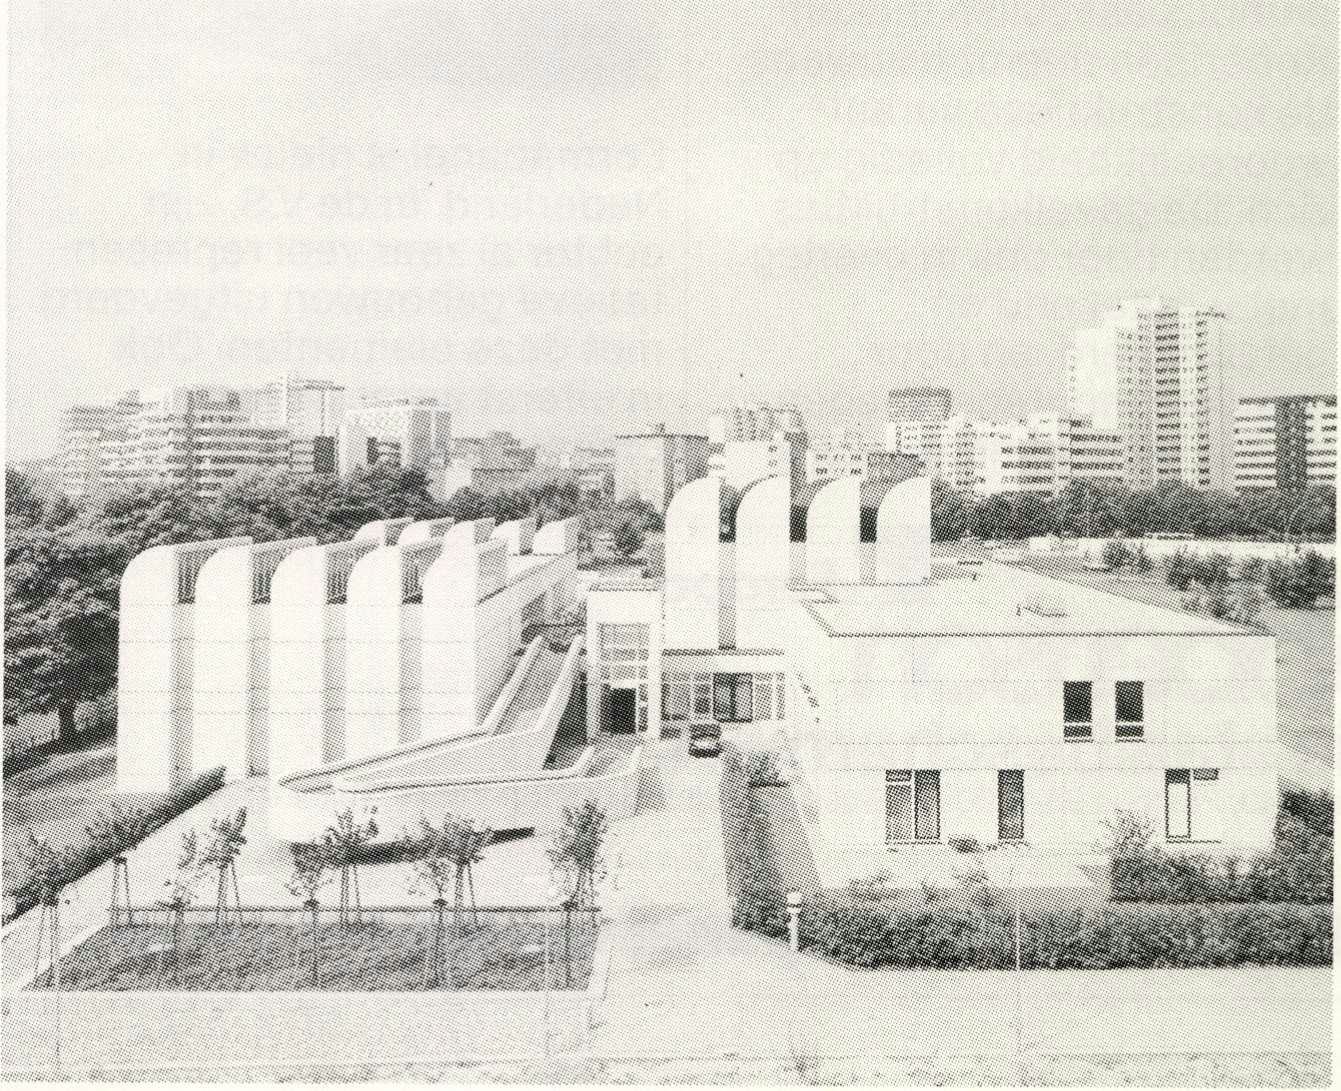 Bauhausarchief Berlijn, gedeeltelijk naar ontwerp van Walter Gropius